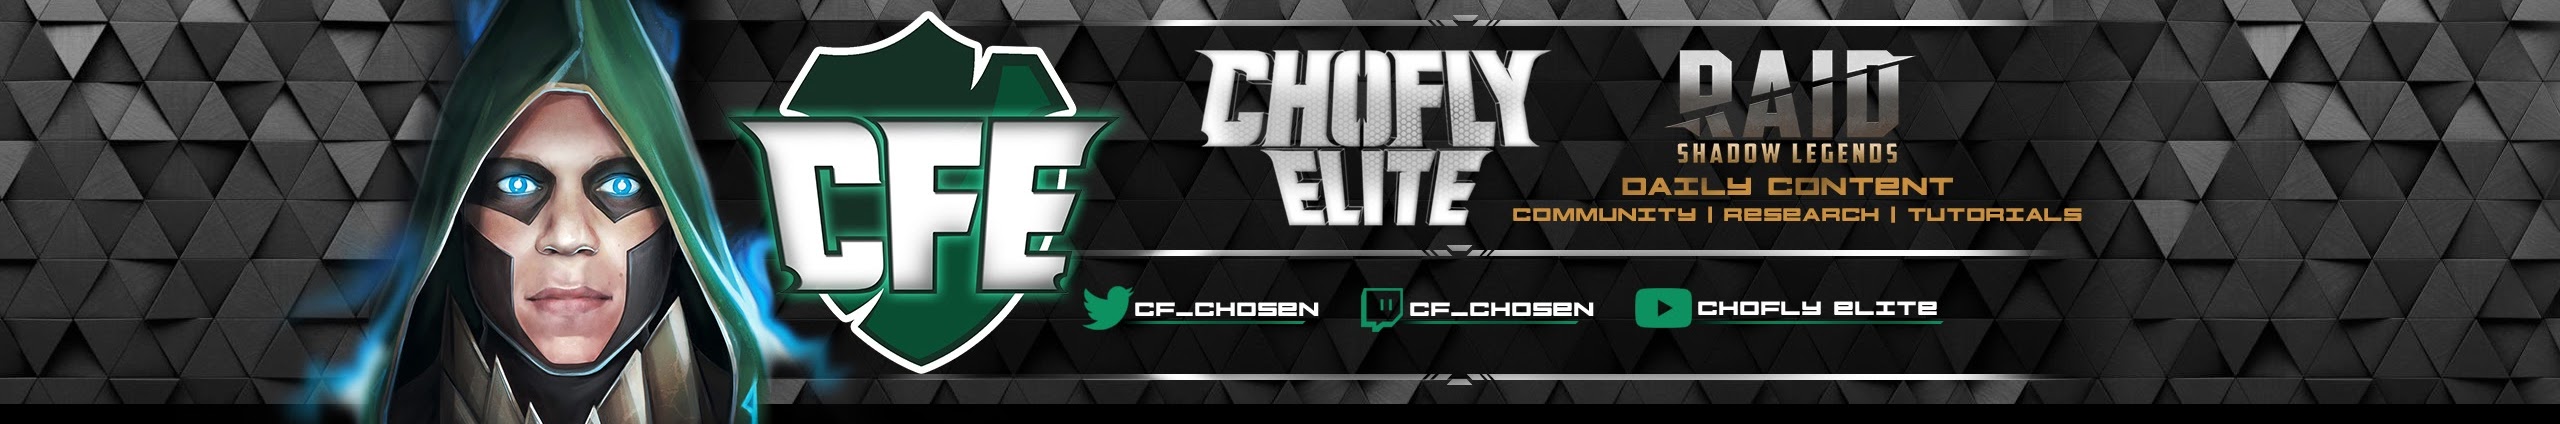 Chofly Elite